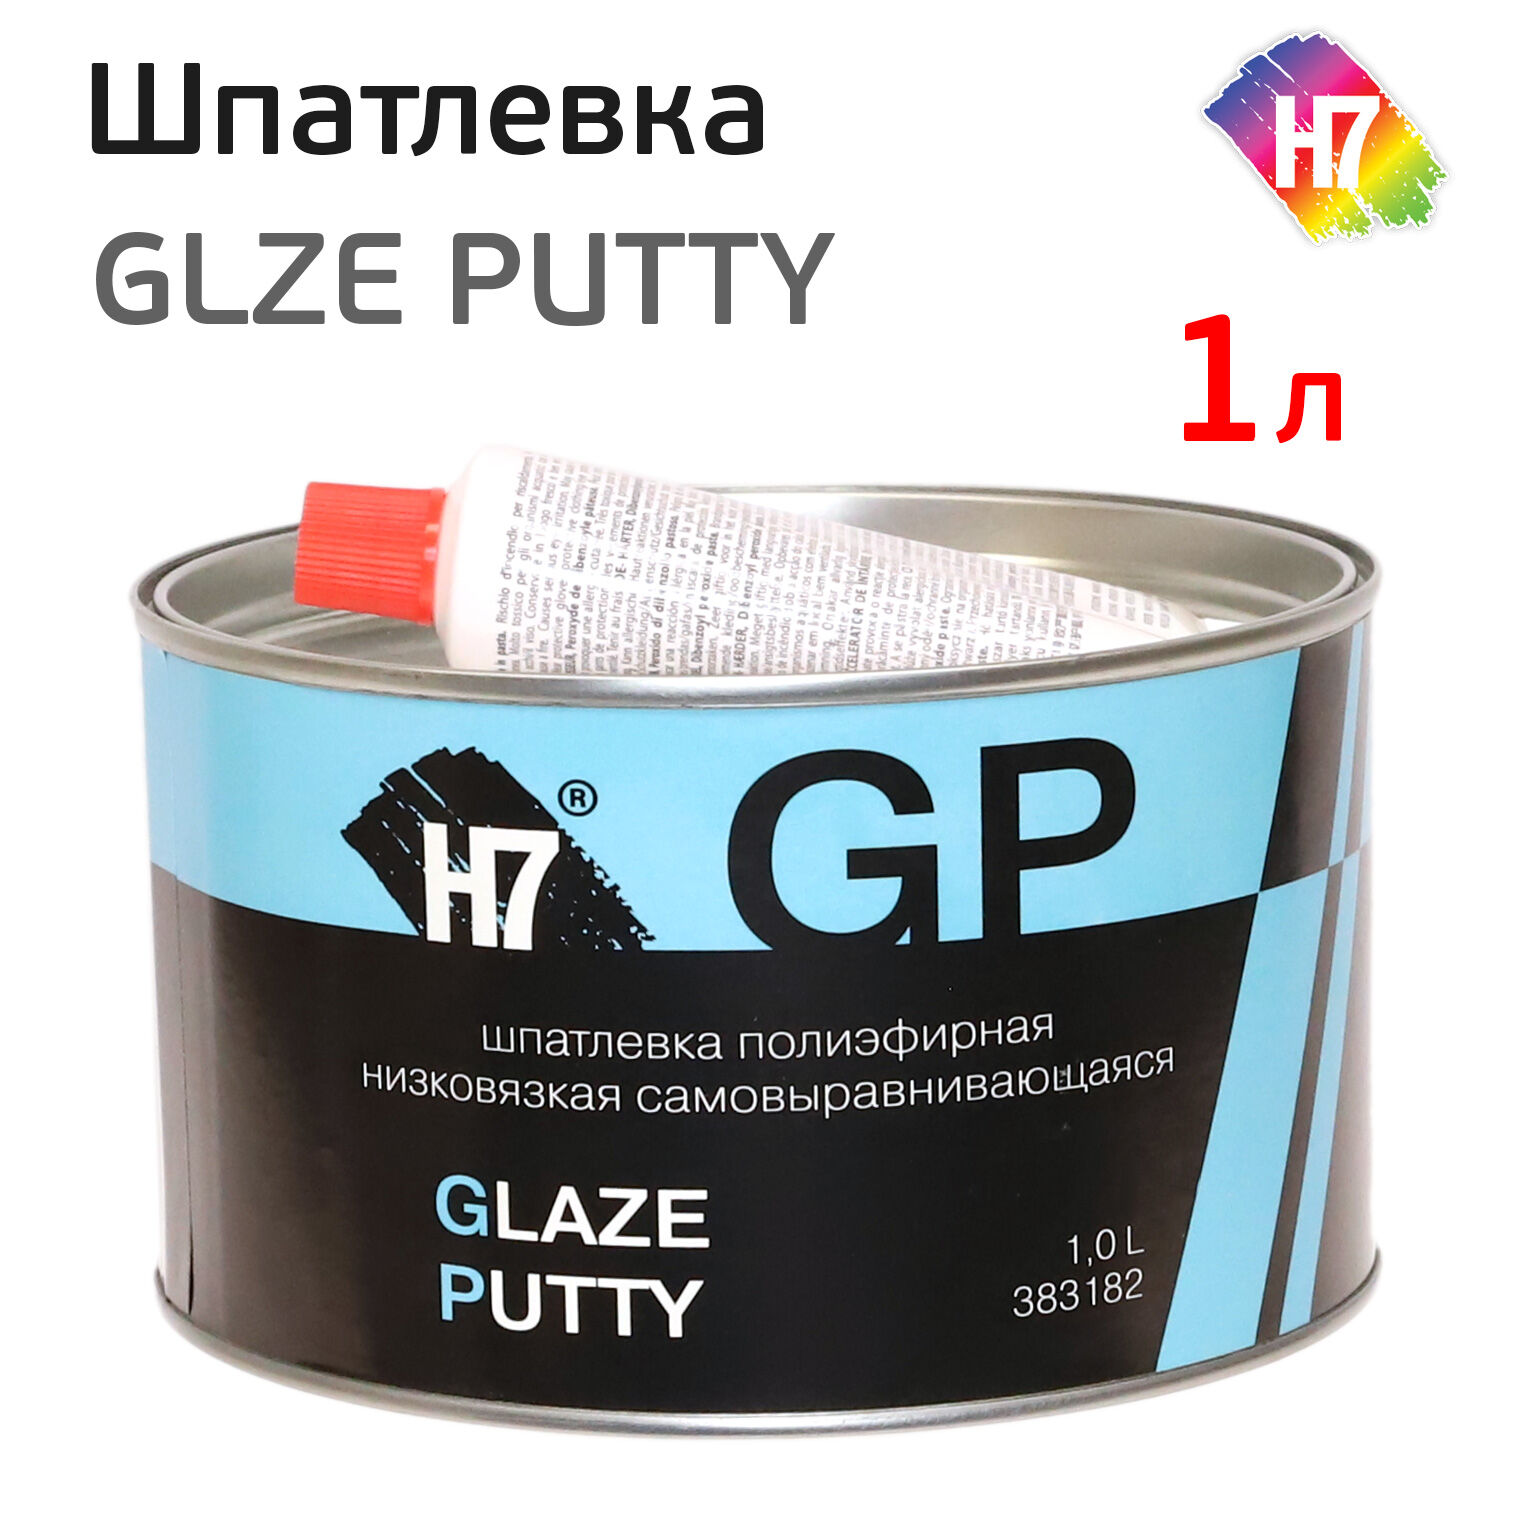 Шпатлевка Н7 Glaze Putty (1л) низковязкая самовыравнивающаяся